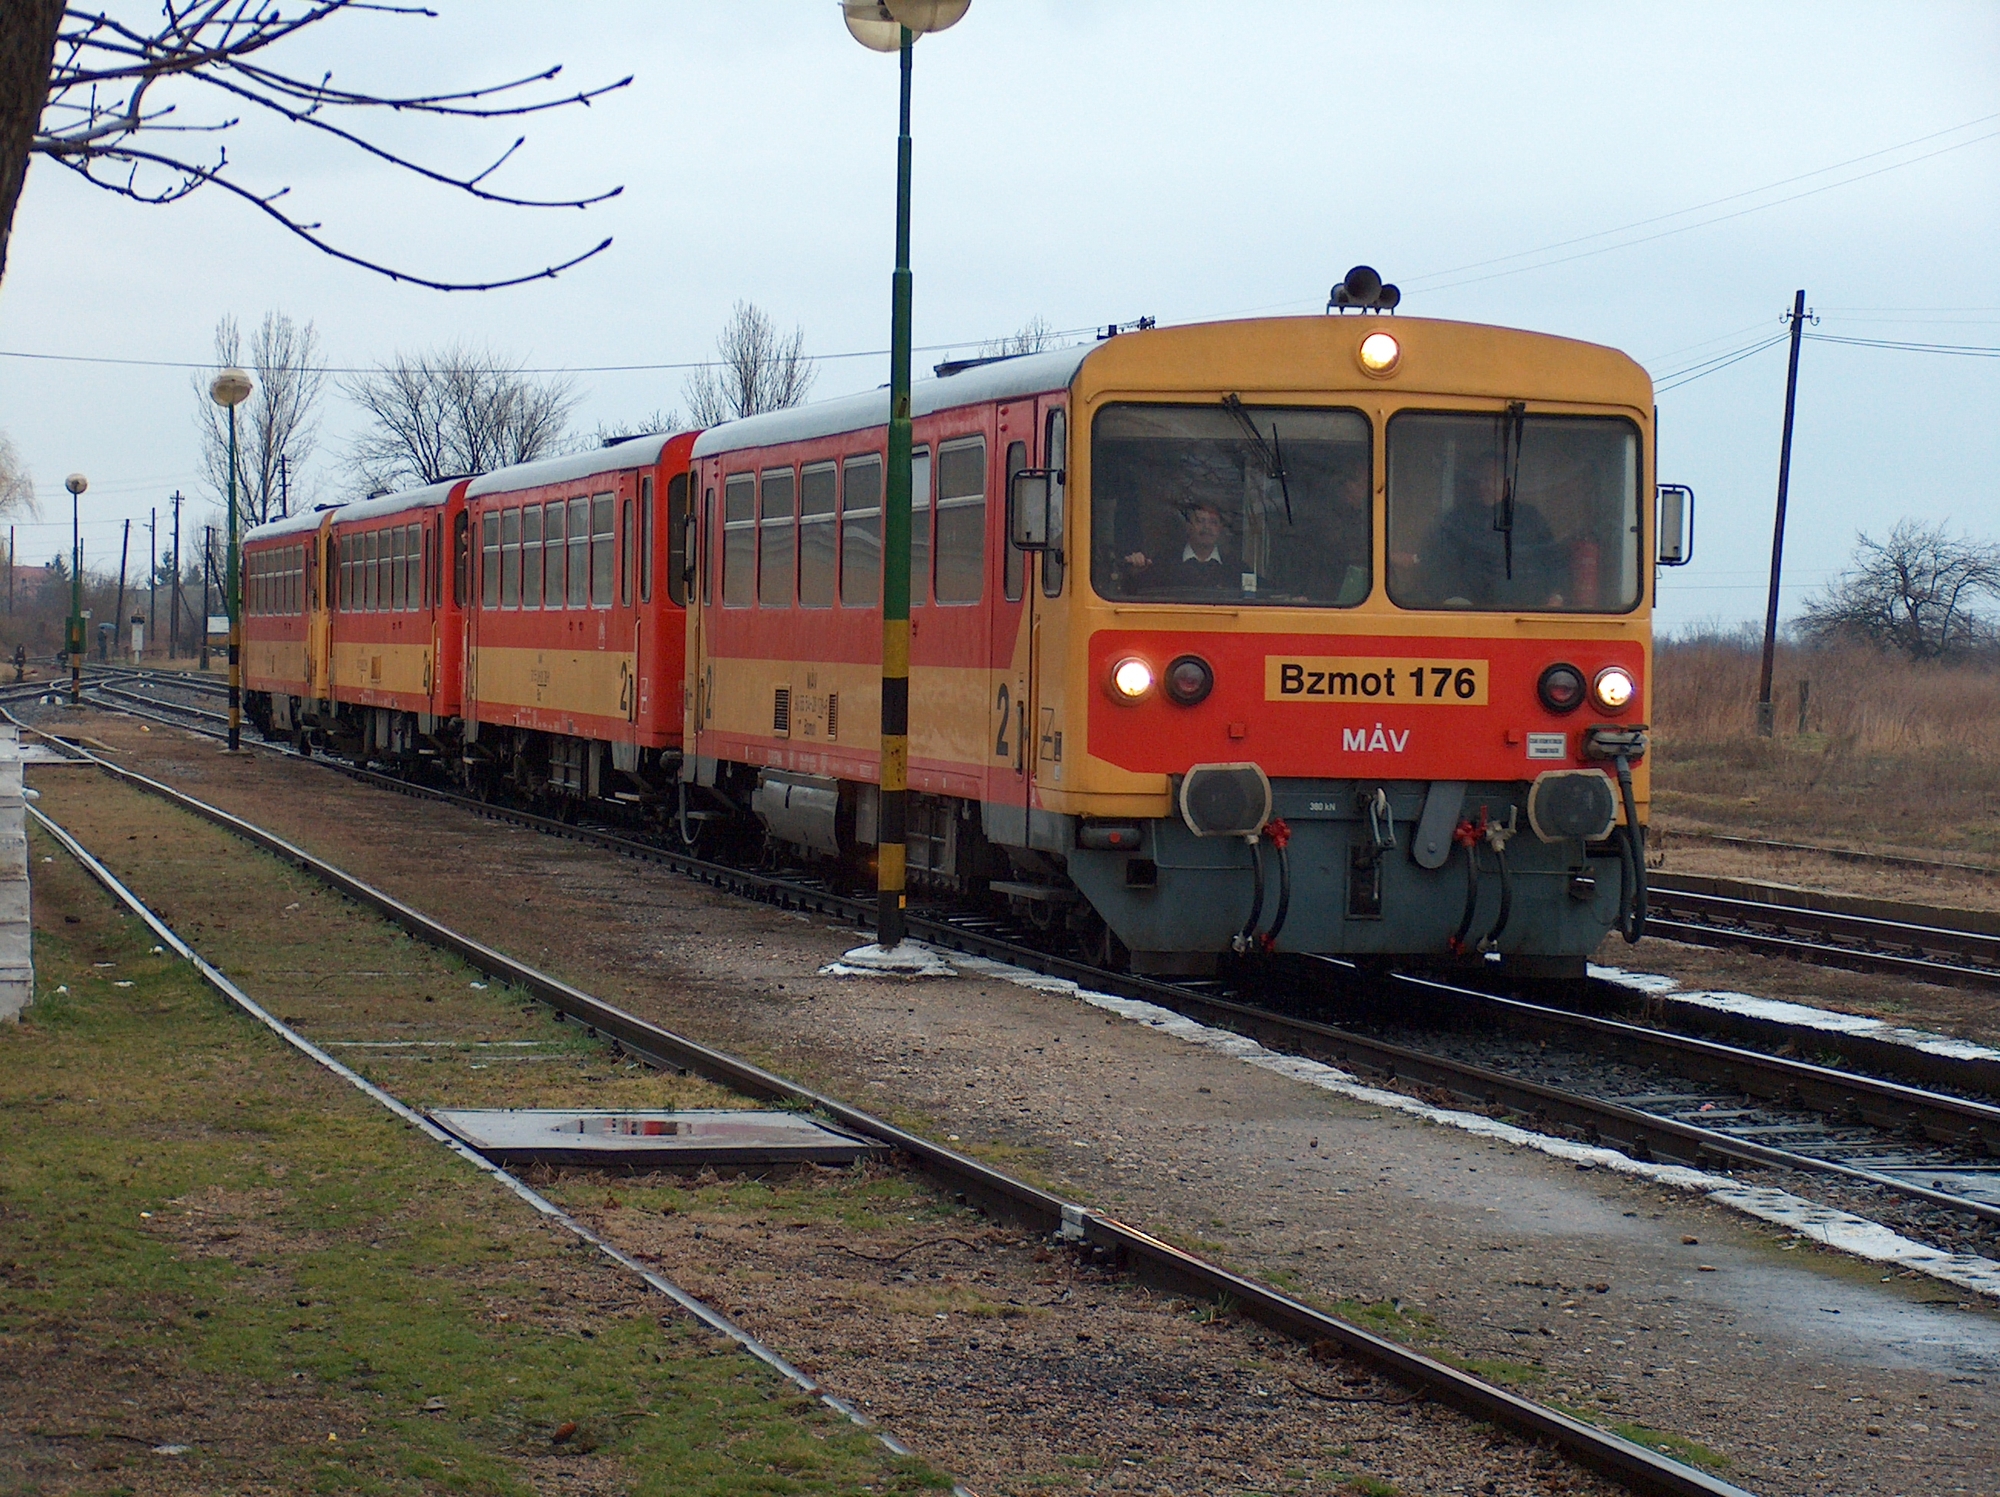 Mint a régi szép mezőcsáti idõkben! A délutáni vonat már két motor- és két mellékkocsival futott be az állomásra (fotók: Pulisch József)